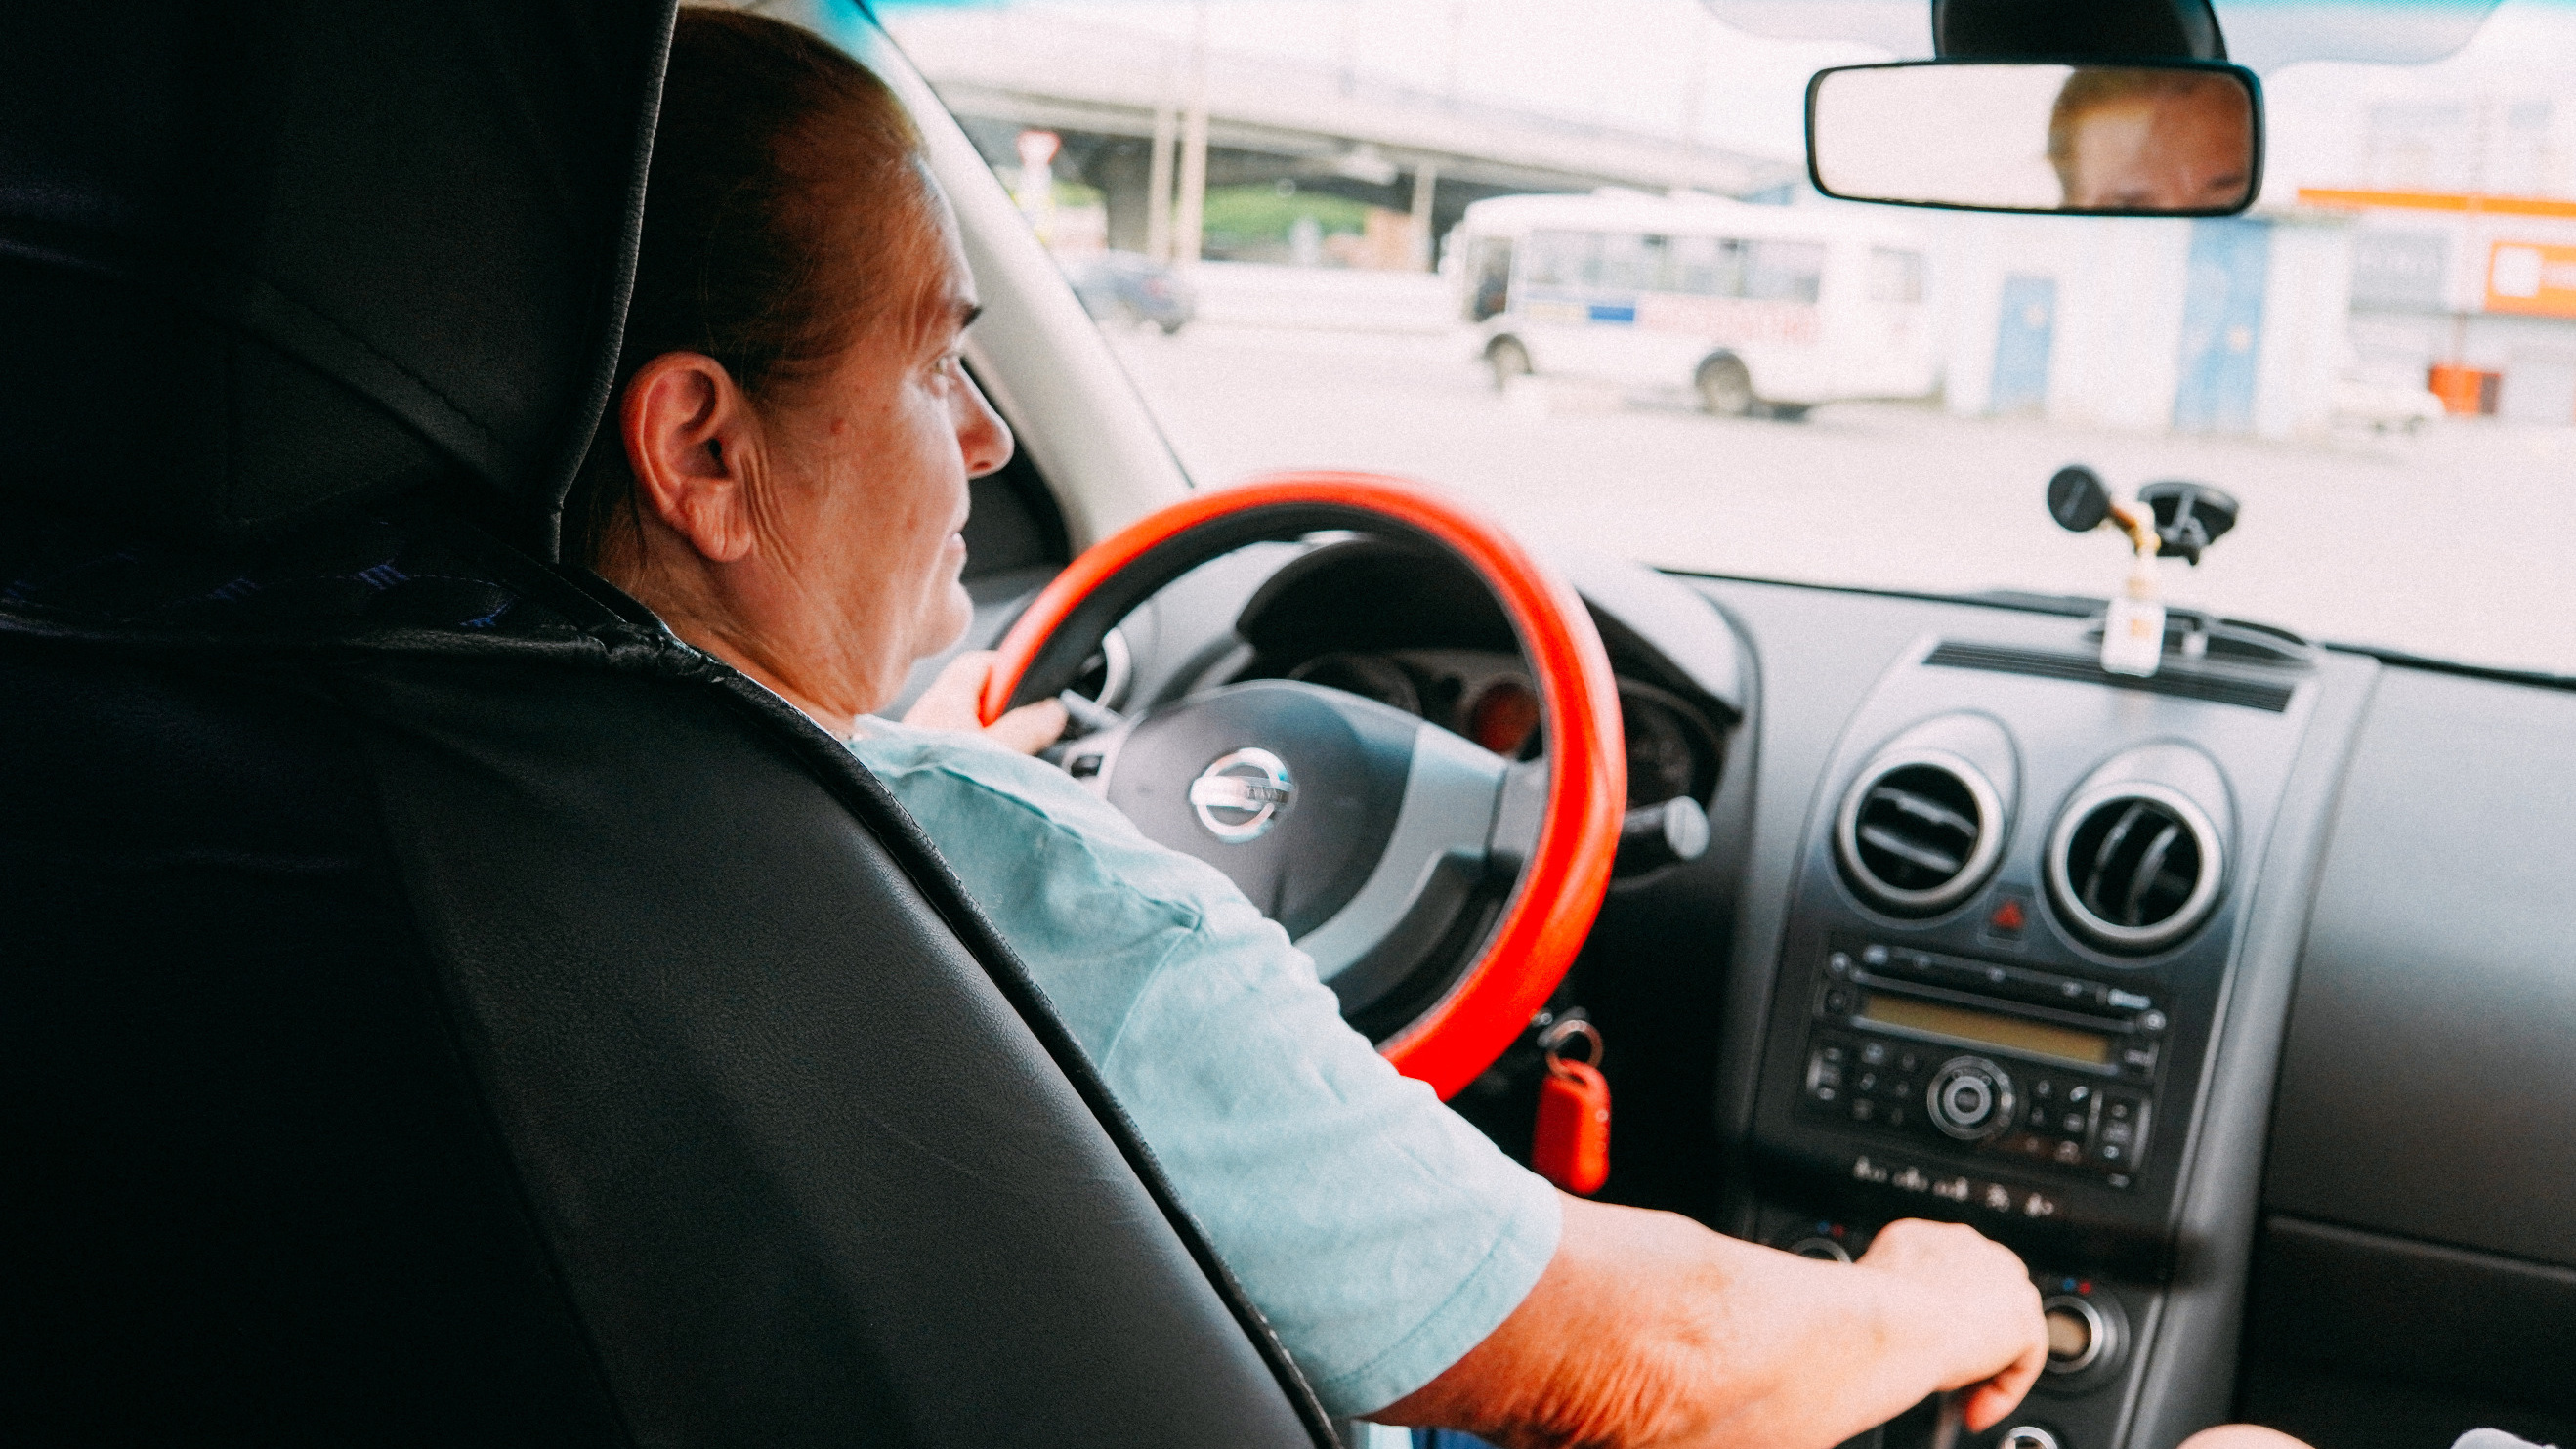 «Не лихачу, но соточку по трассе могу»: как пенсионерка в <nobr class="_">70 лет</nobr> научилась водить машину и получила права